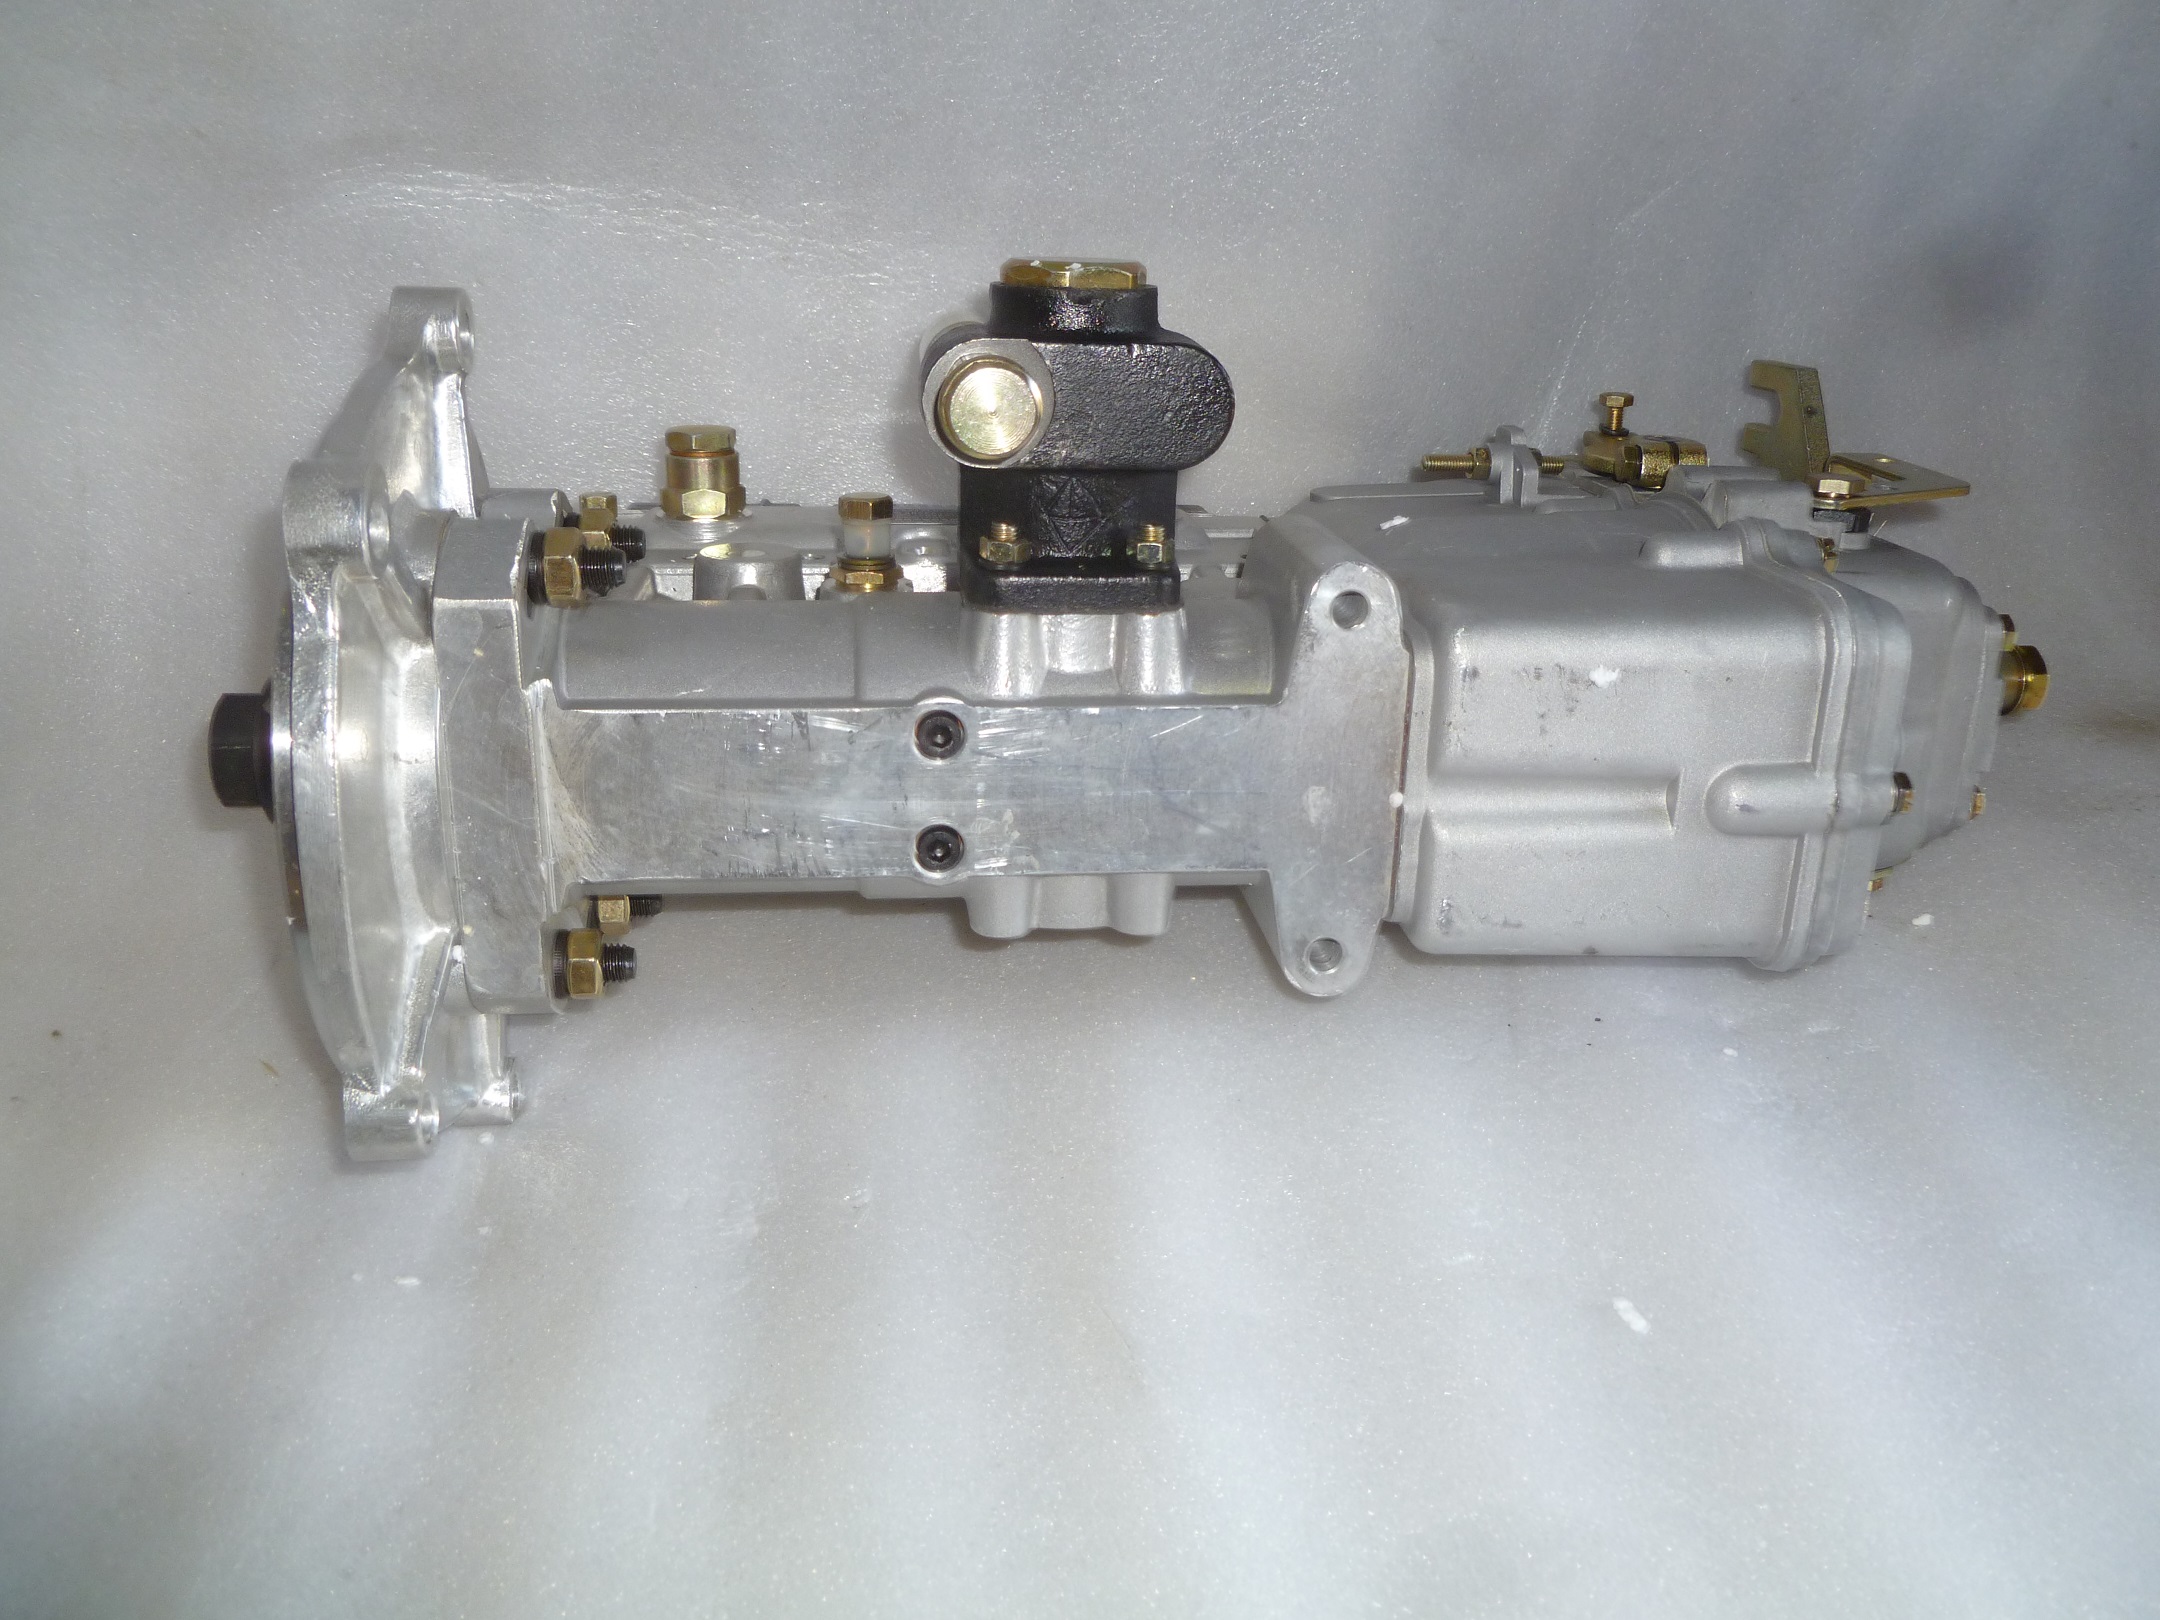 Насос топливный высокого давления Ricardo R6110ZLDS; TDK 170 6LT/Fuel Injection Pump (BH6PA110R)